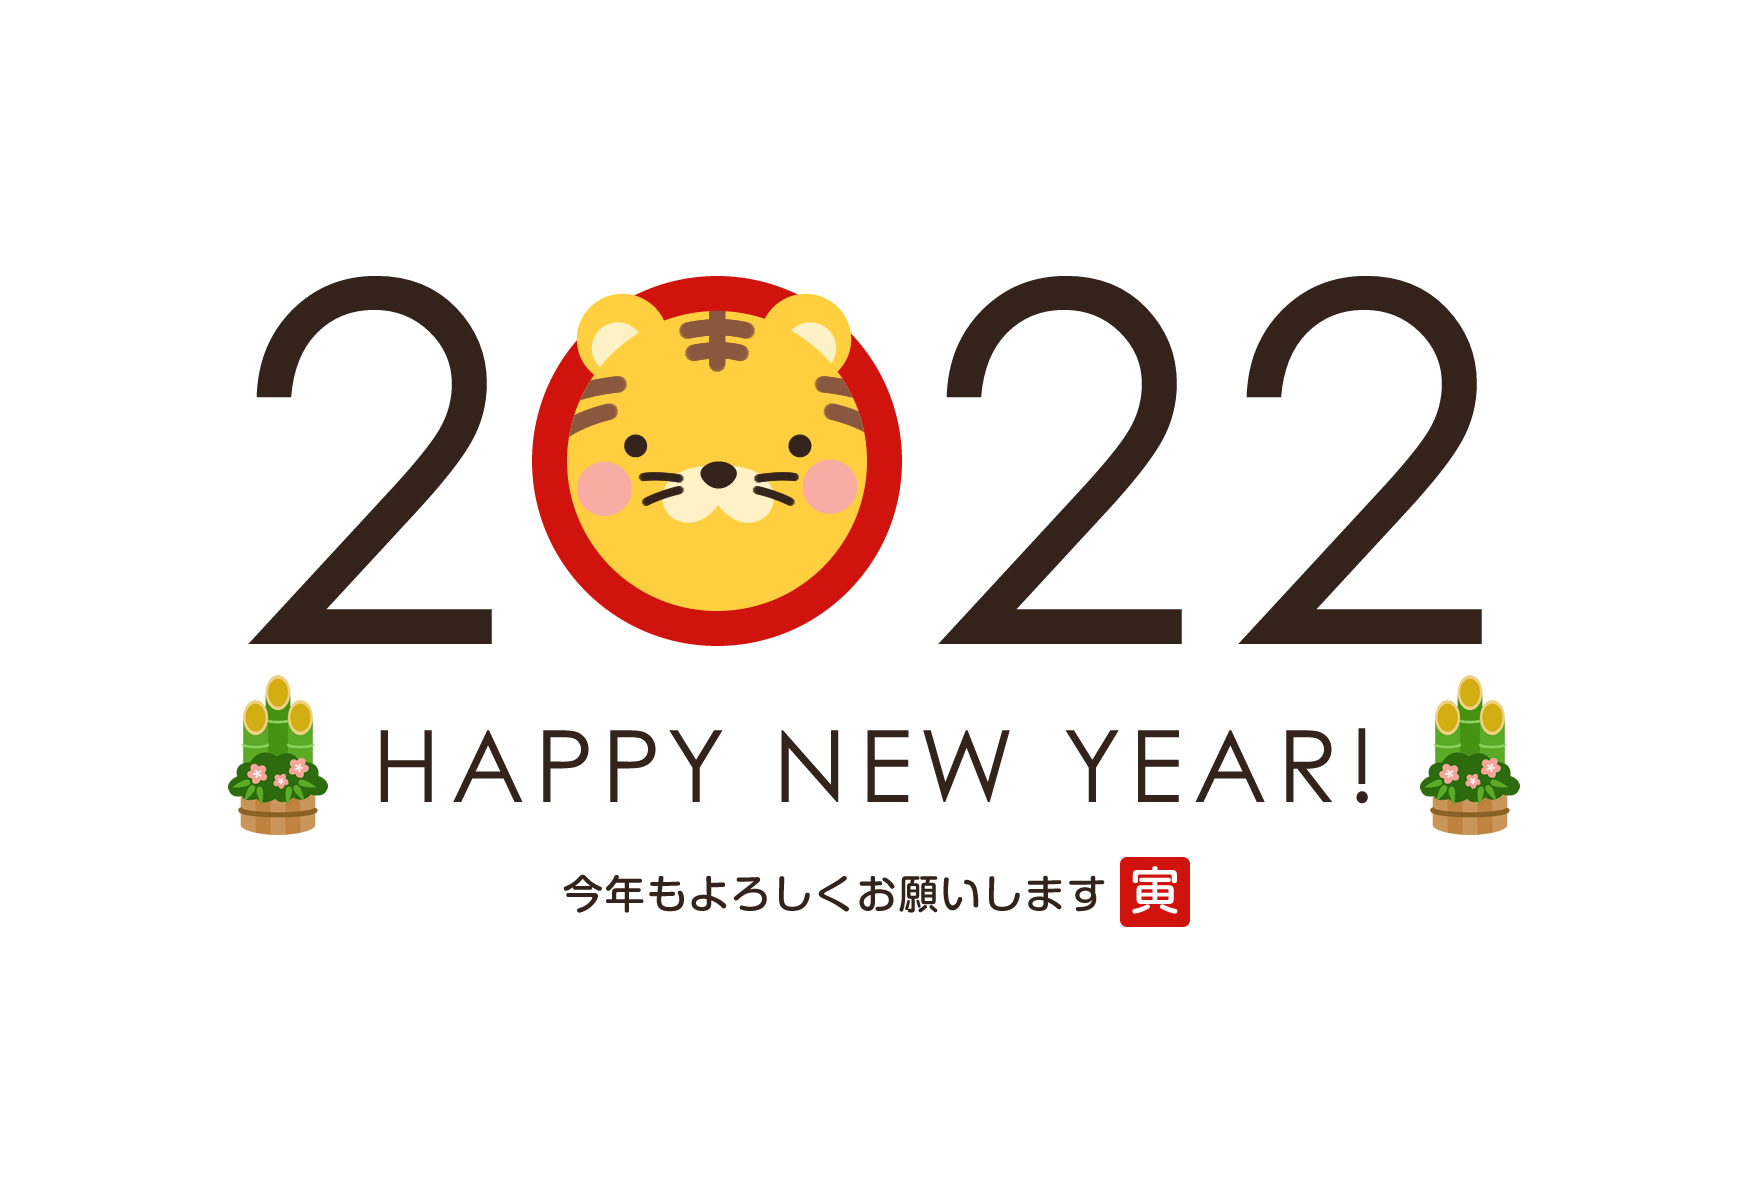 2022年賀状デザイン無料テンプレート「２０２２とかわいいトラ」 | 無料フリーイラスト素材集【Frame illust】